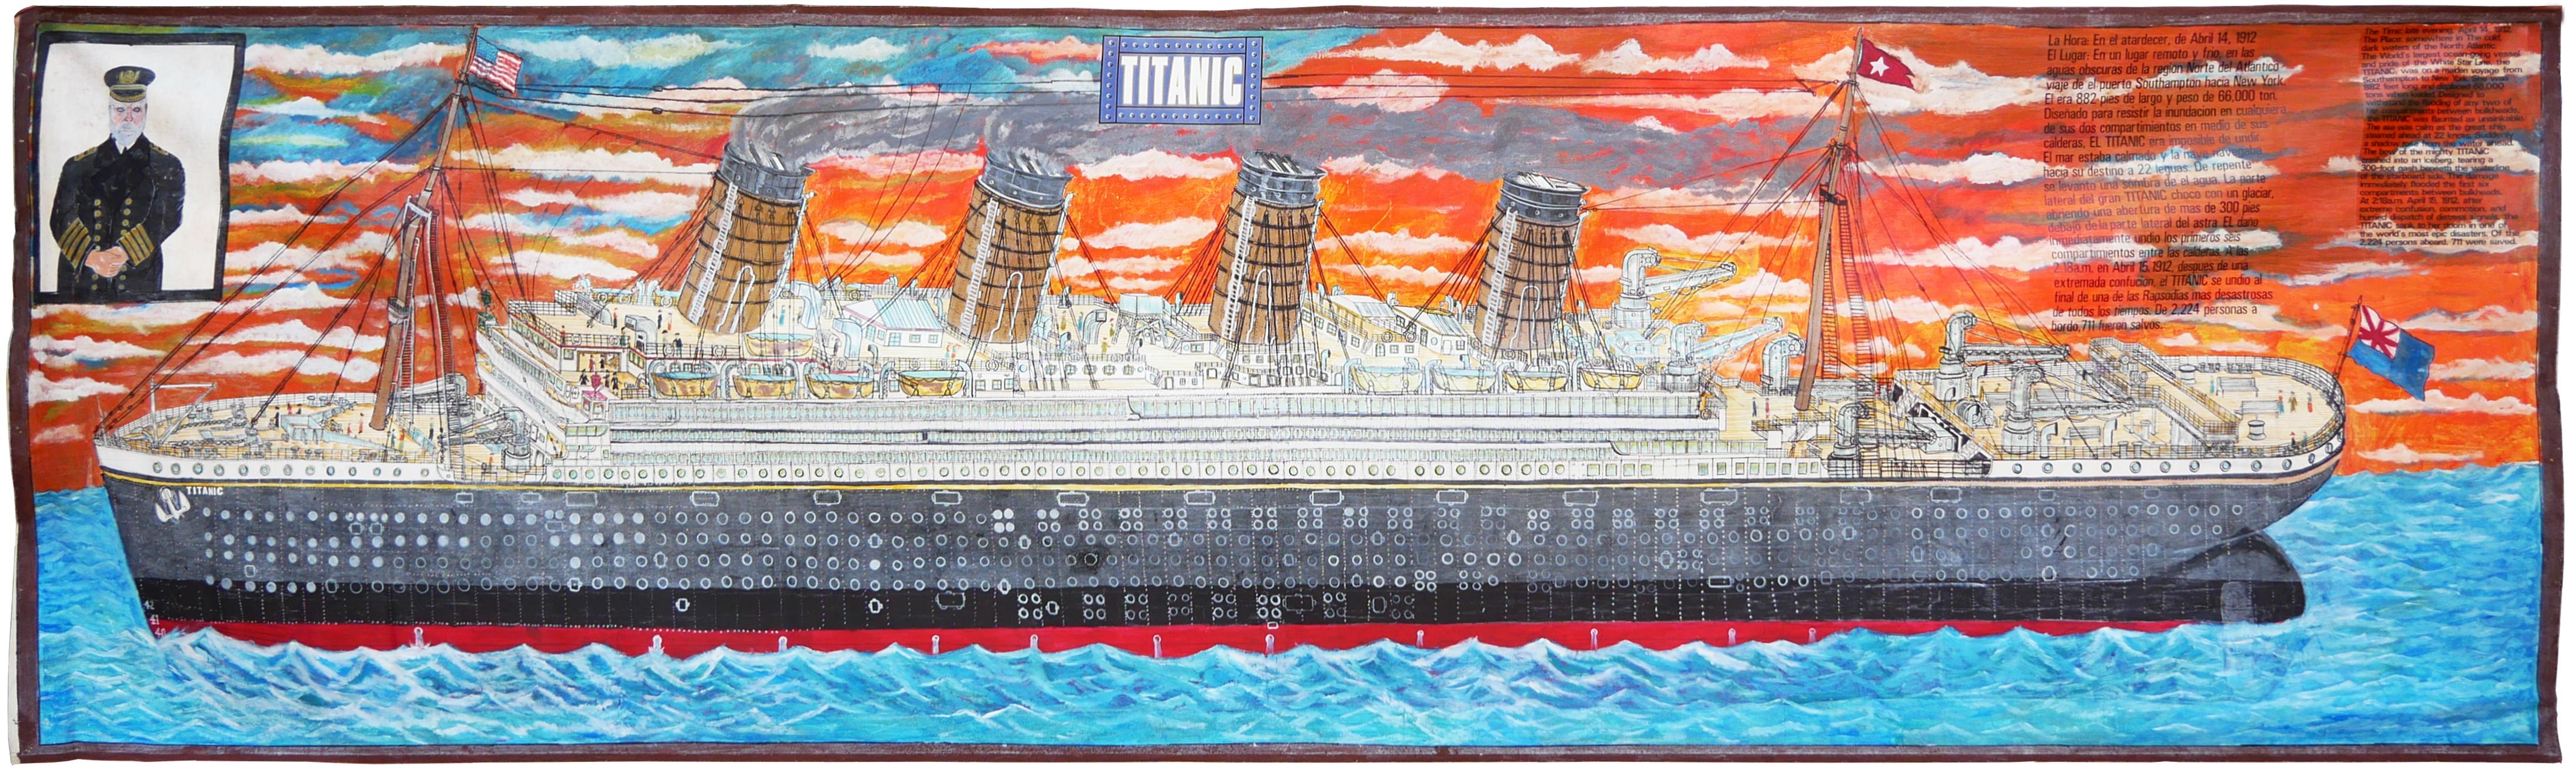 Peinture contemporaine abstraite aux tons orange et bleu du Titanic